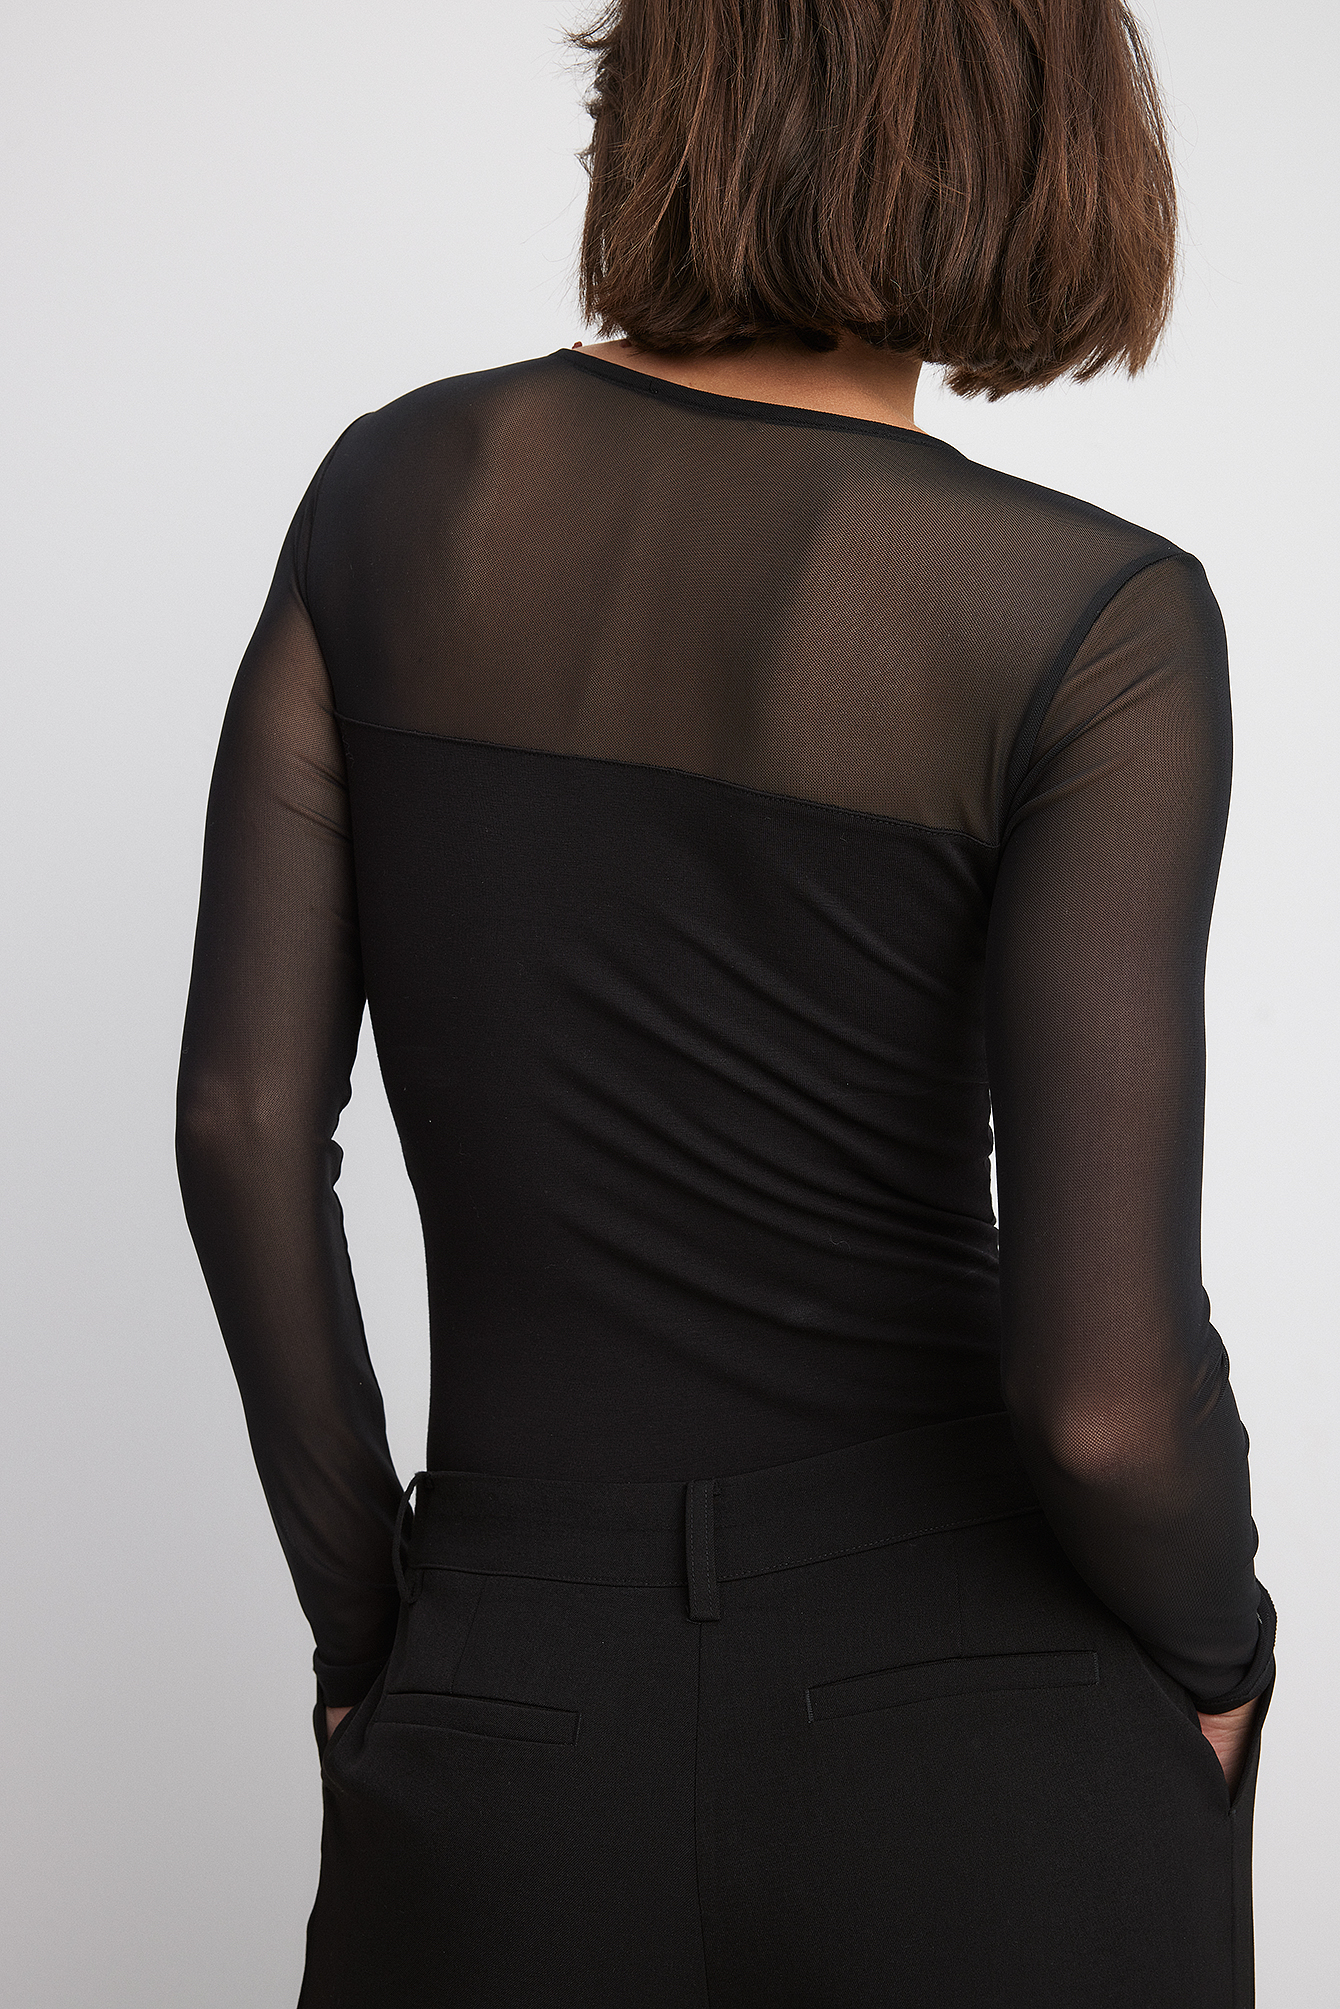 Alfani Women's Asymmetrical Draped Mesh Top Black Size X-Large 